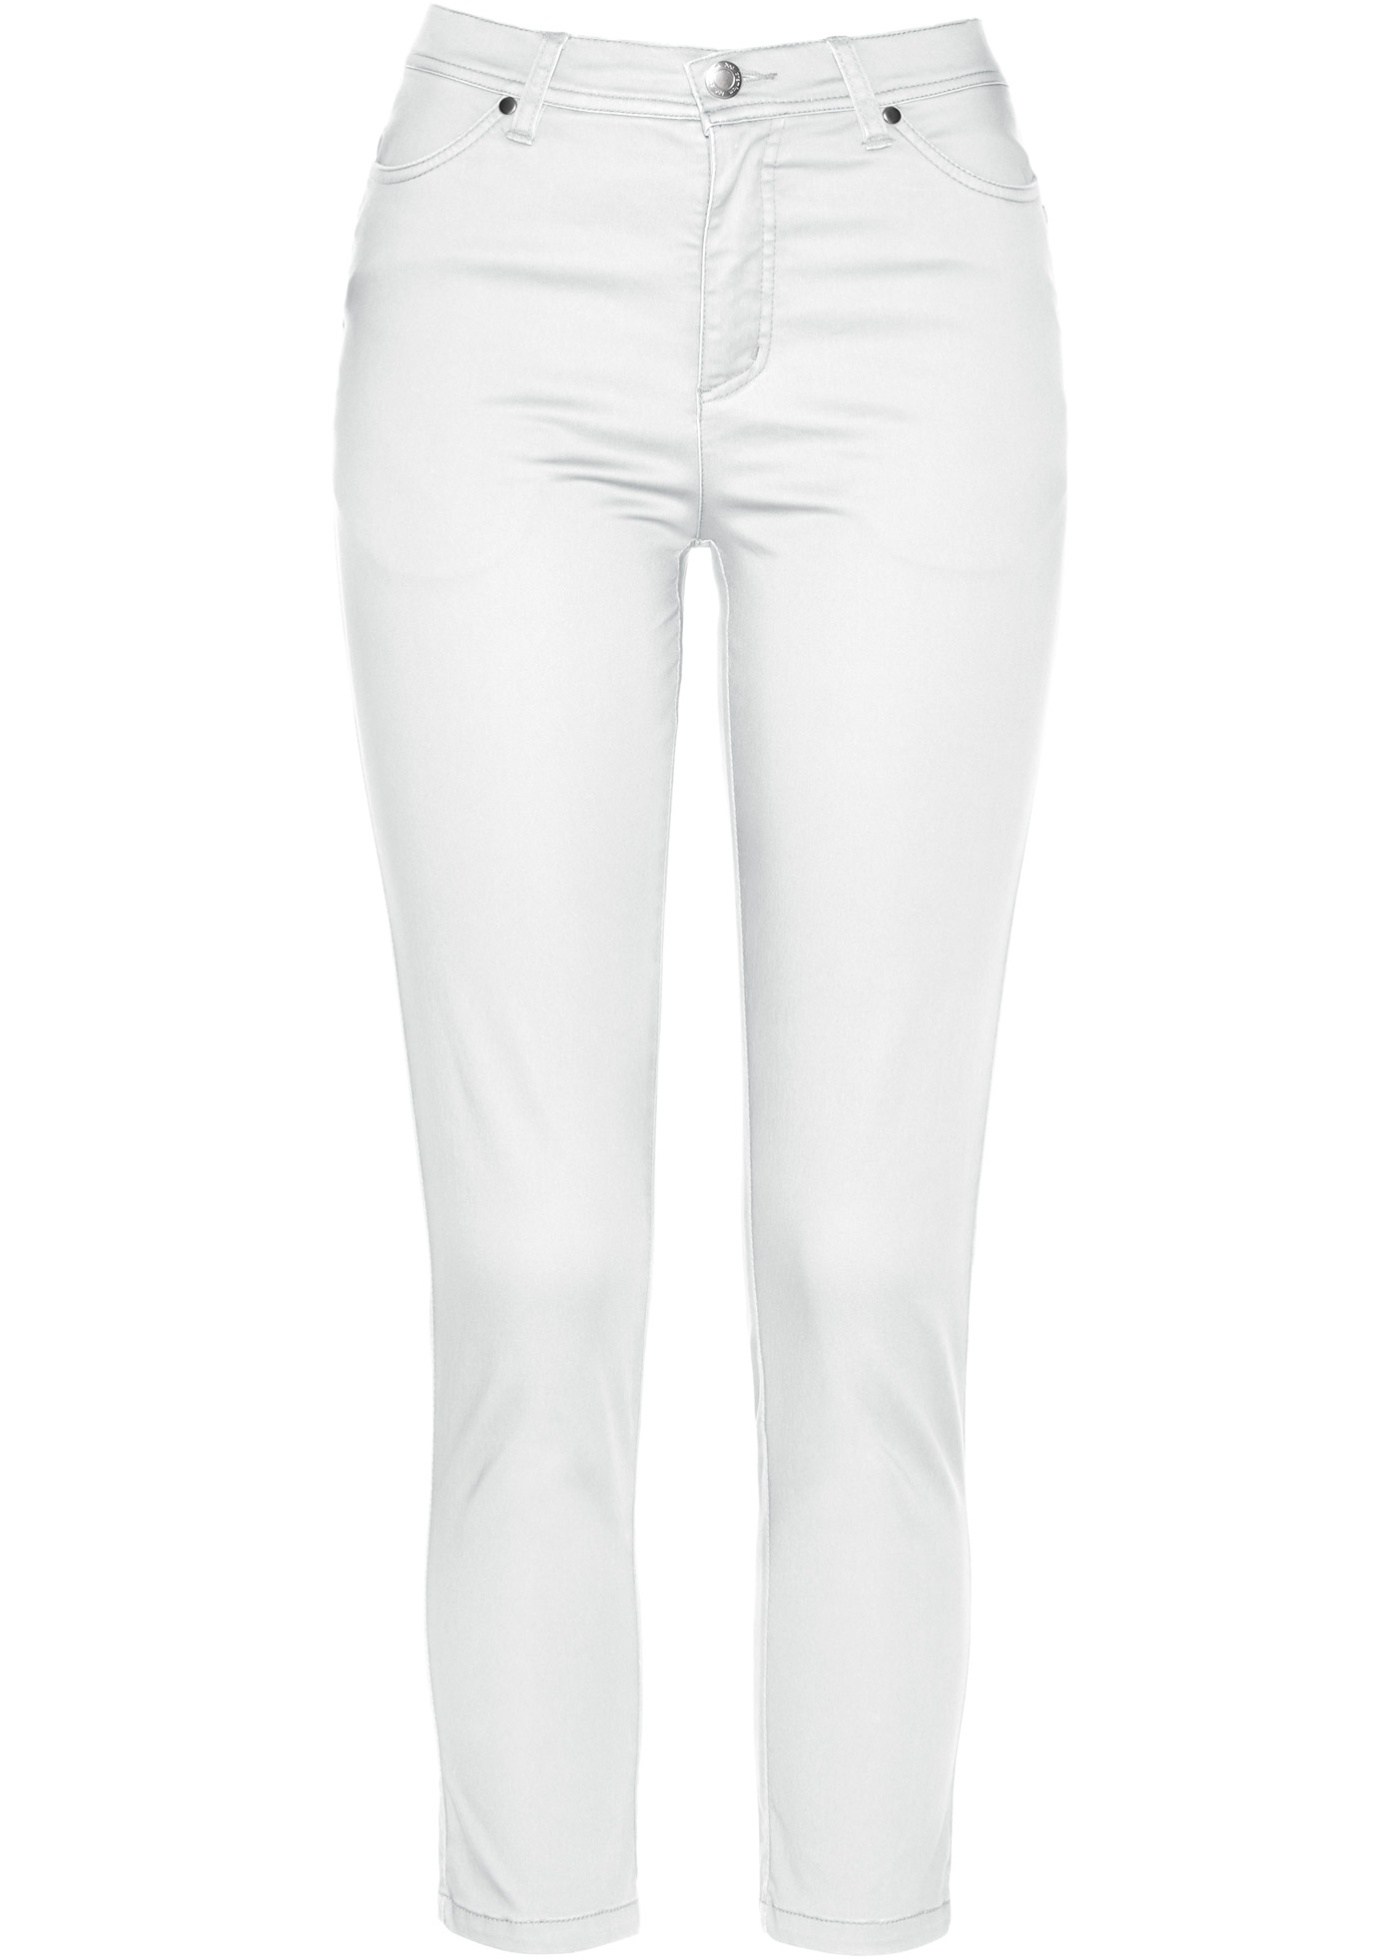 Pantalon stretch près du corps en longueur 7/8 - blanc